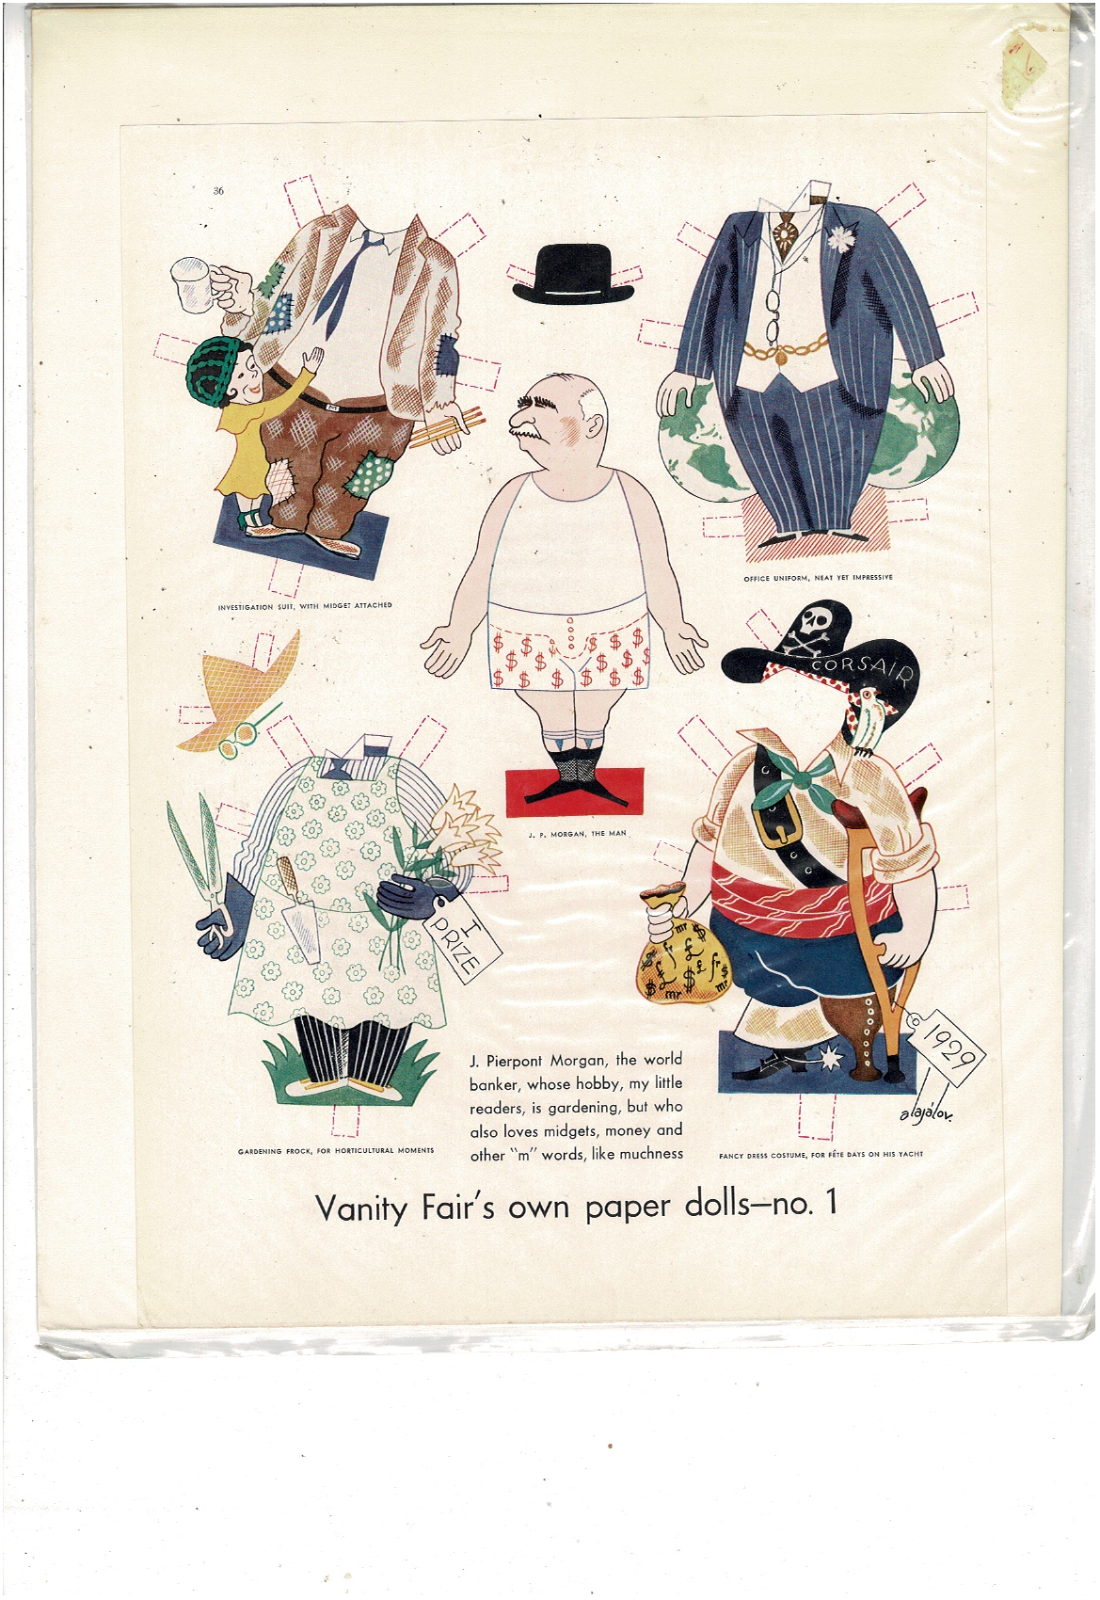 1929 VANITY FAIR PAPER DOLL AND CLOTHES JP MORGAN CONSTANTIN ALAHOV AD PRINT I23